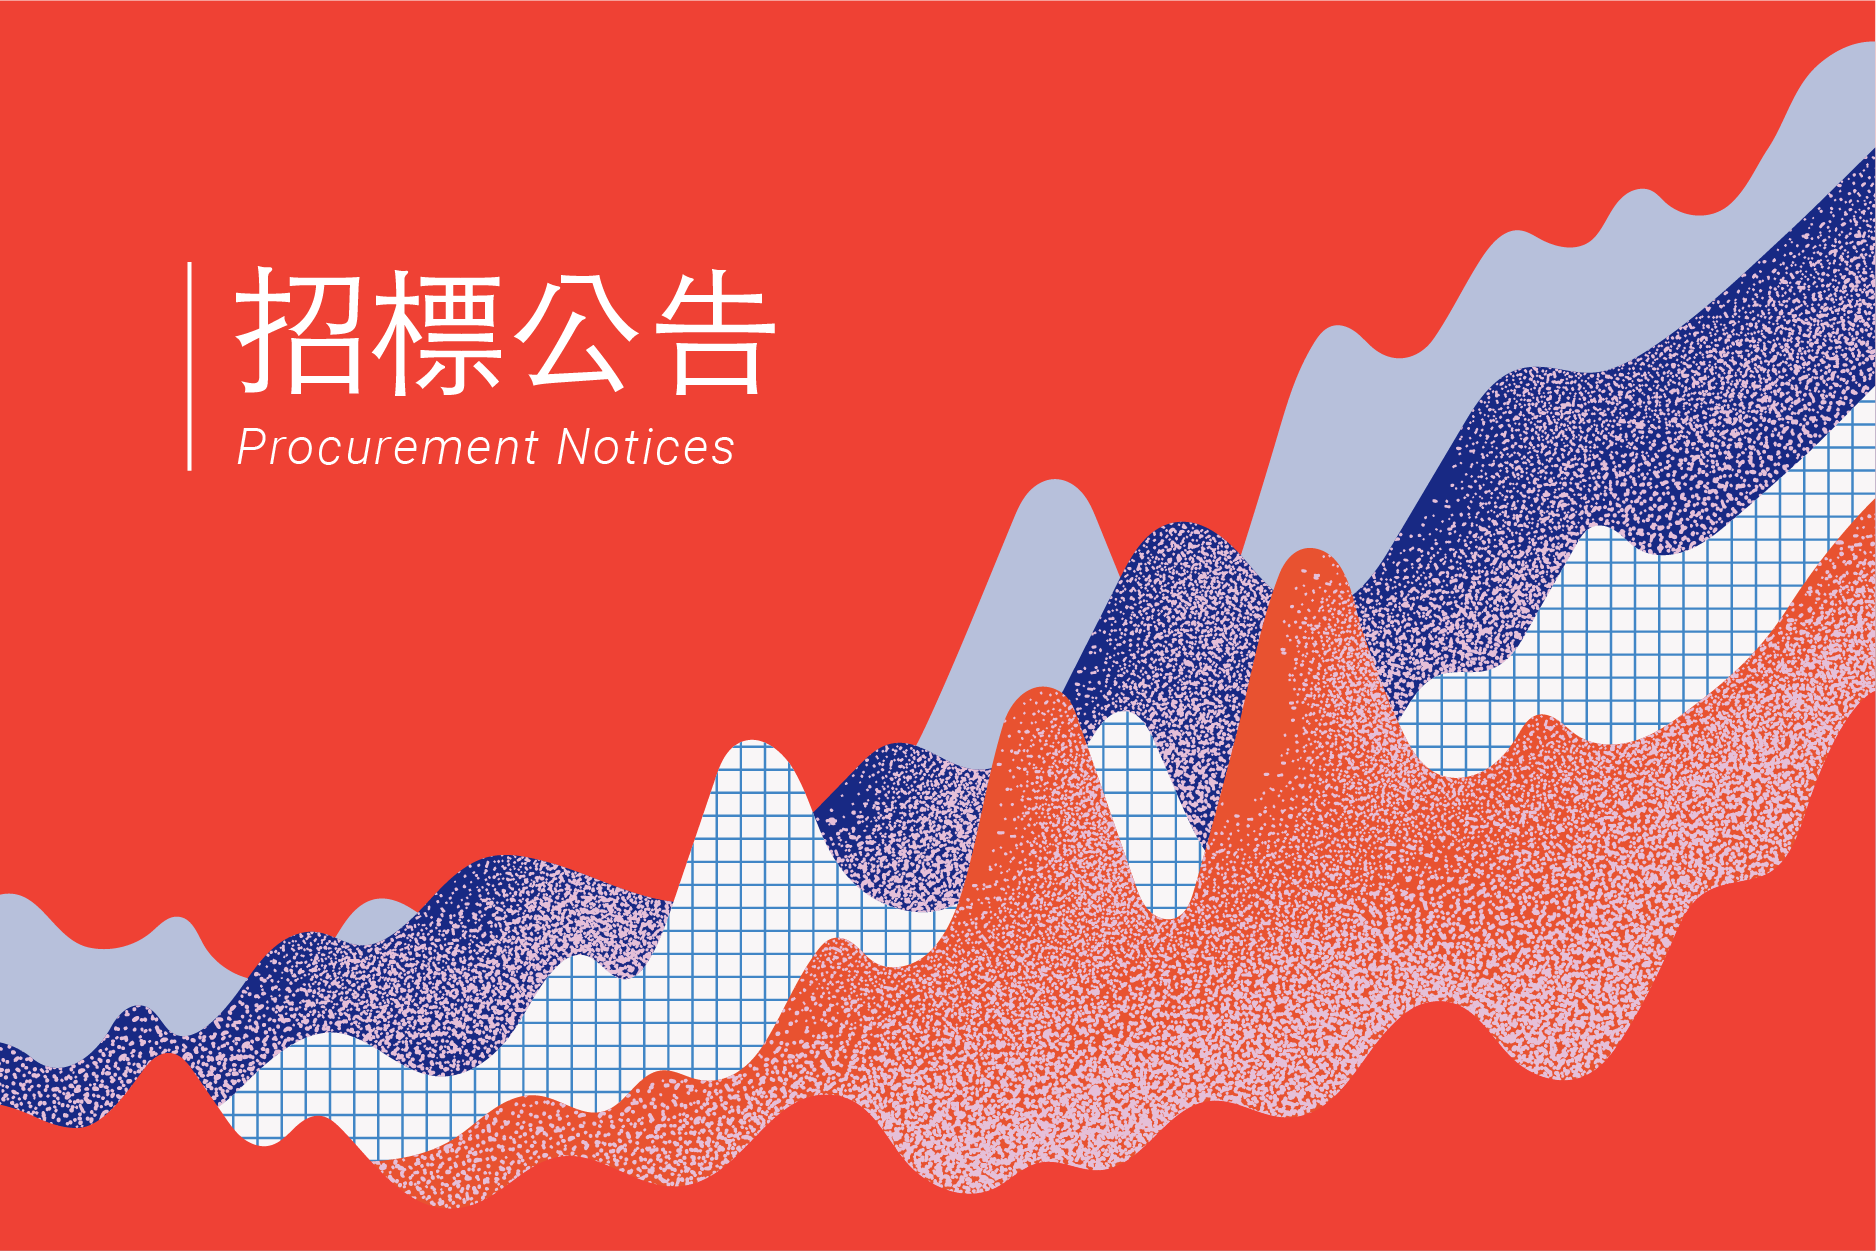 (已截標)【第二次公告】2021年臺灣文化創意產業發展年報編印計畫勞務採購案(公開評選)